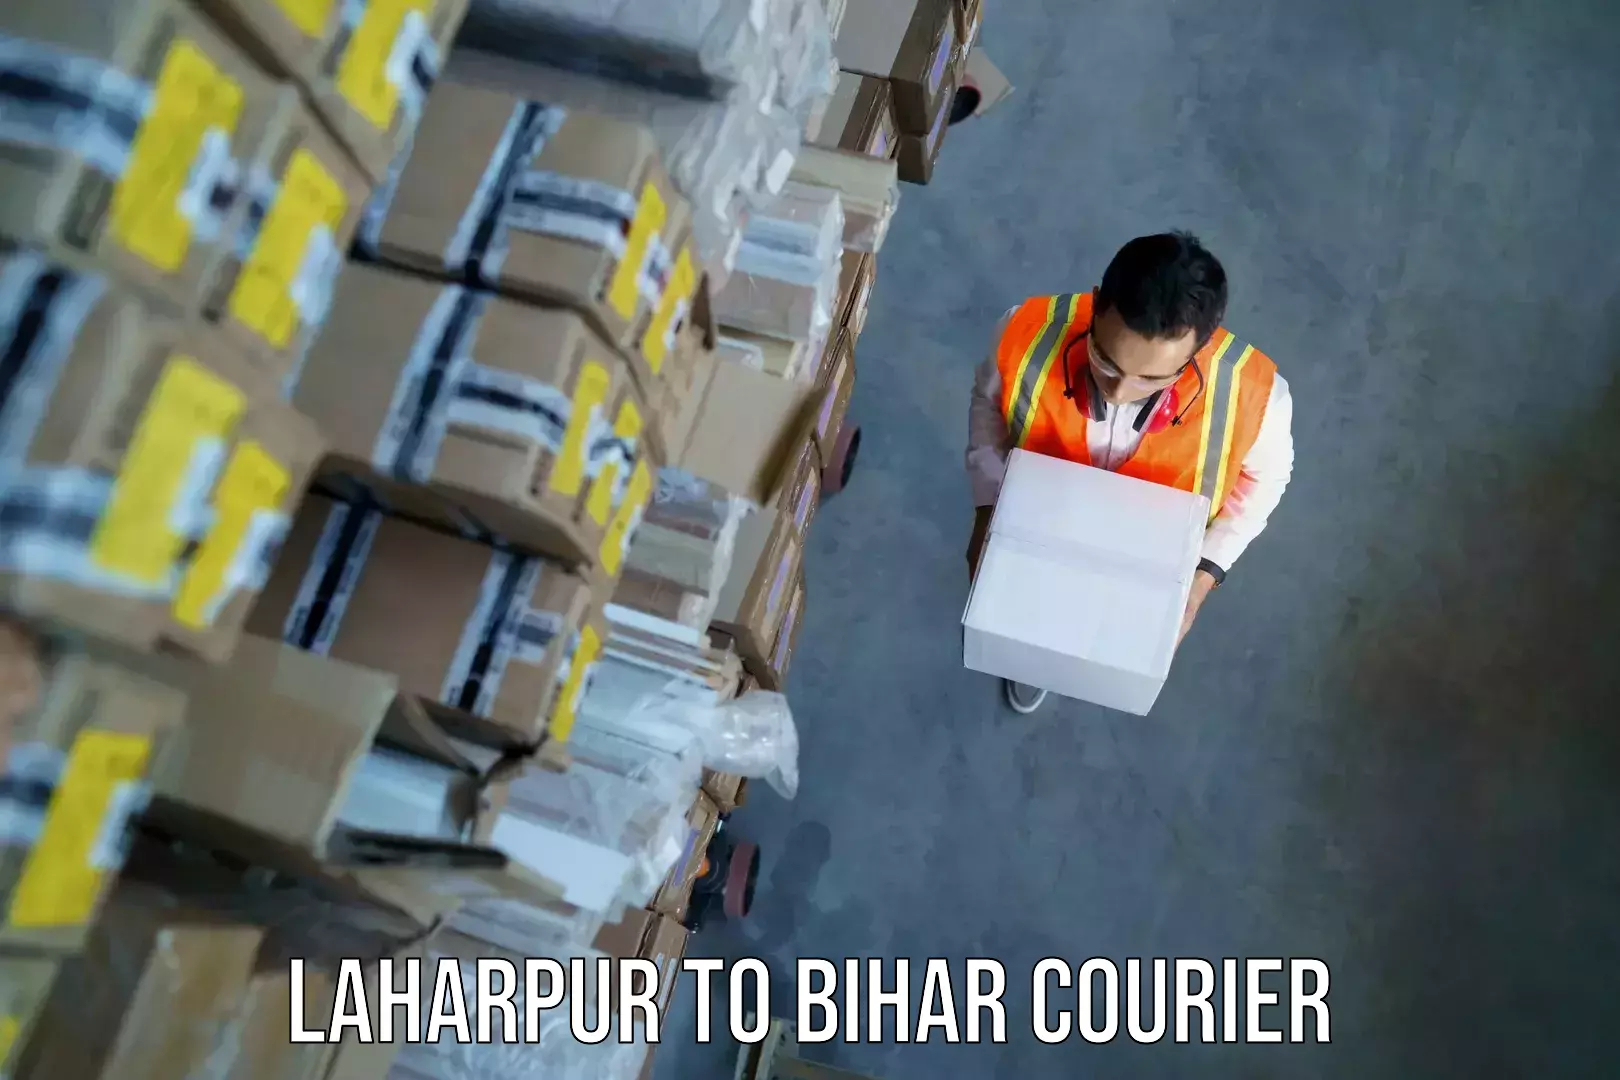 Digital baggage courier Laharpur to Phulparas